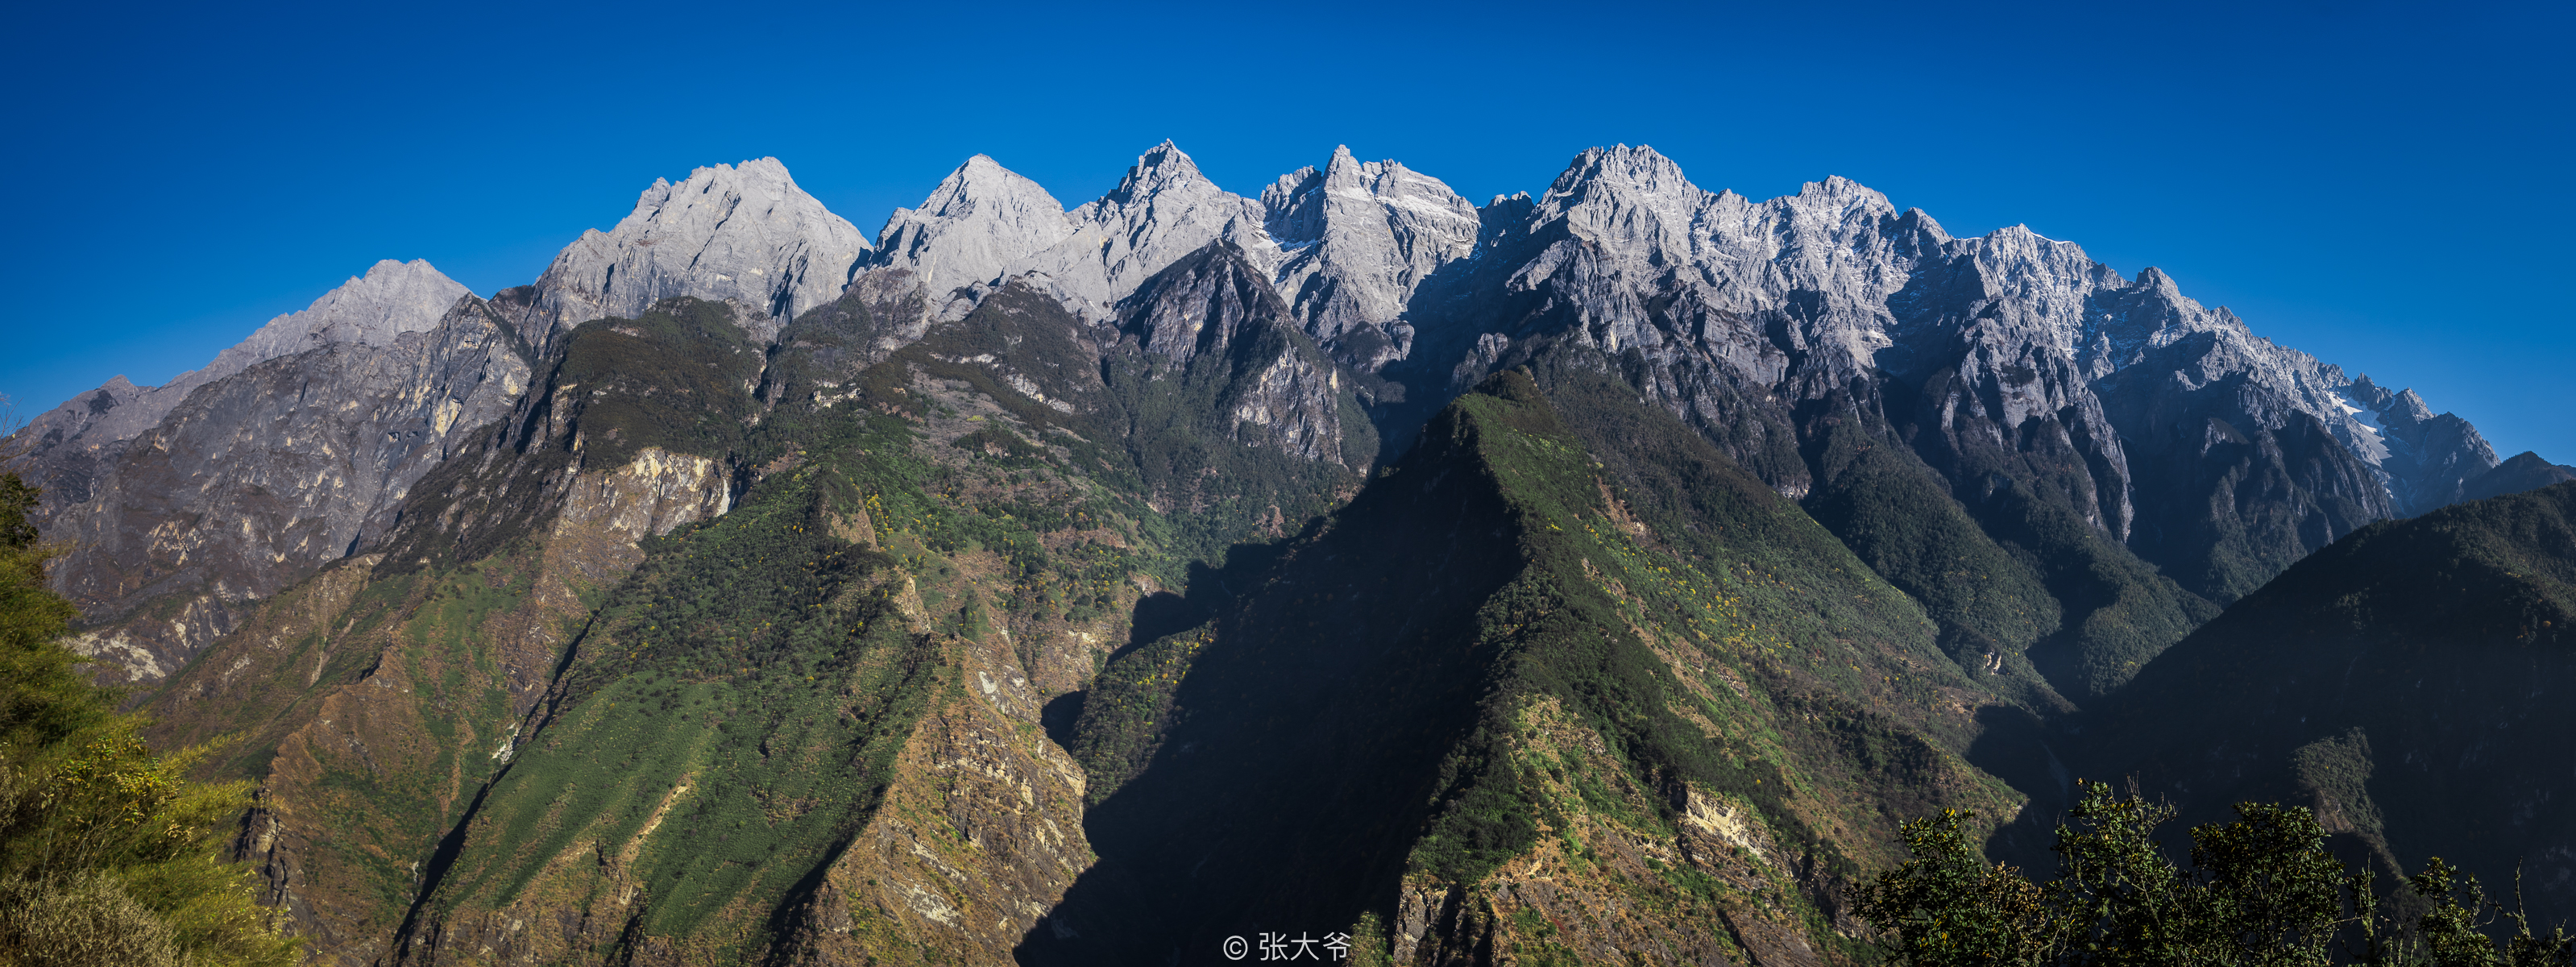 Thirteen peaks of Yulong Snow Mountain